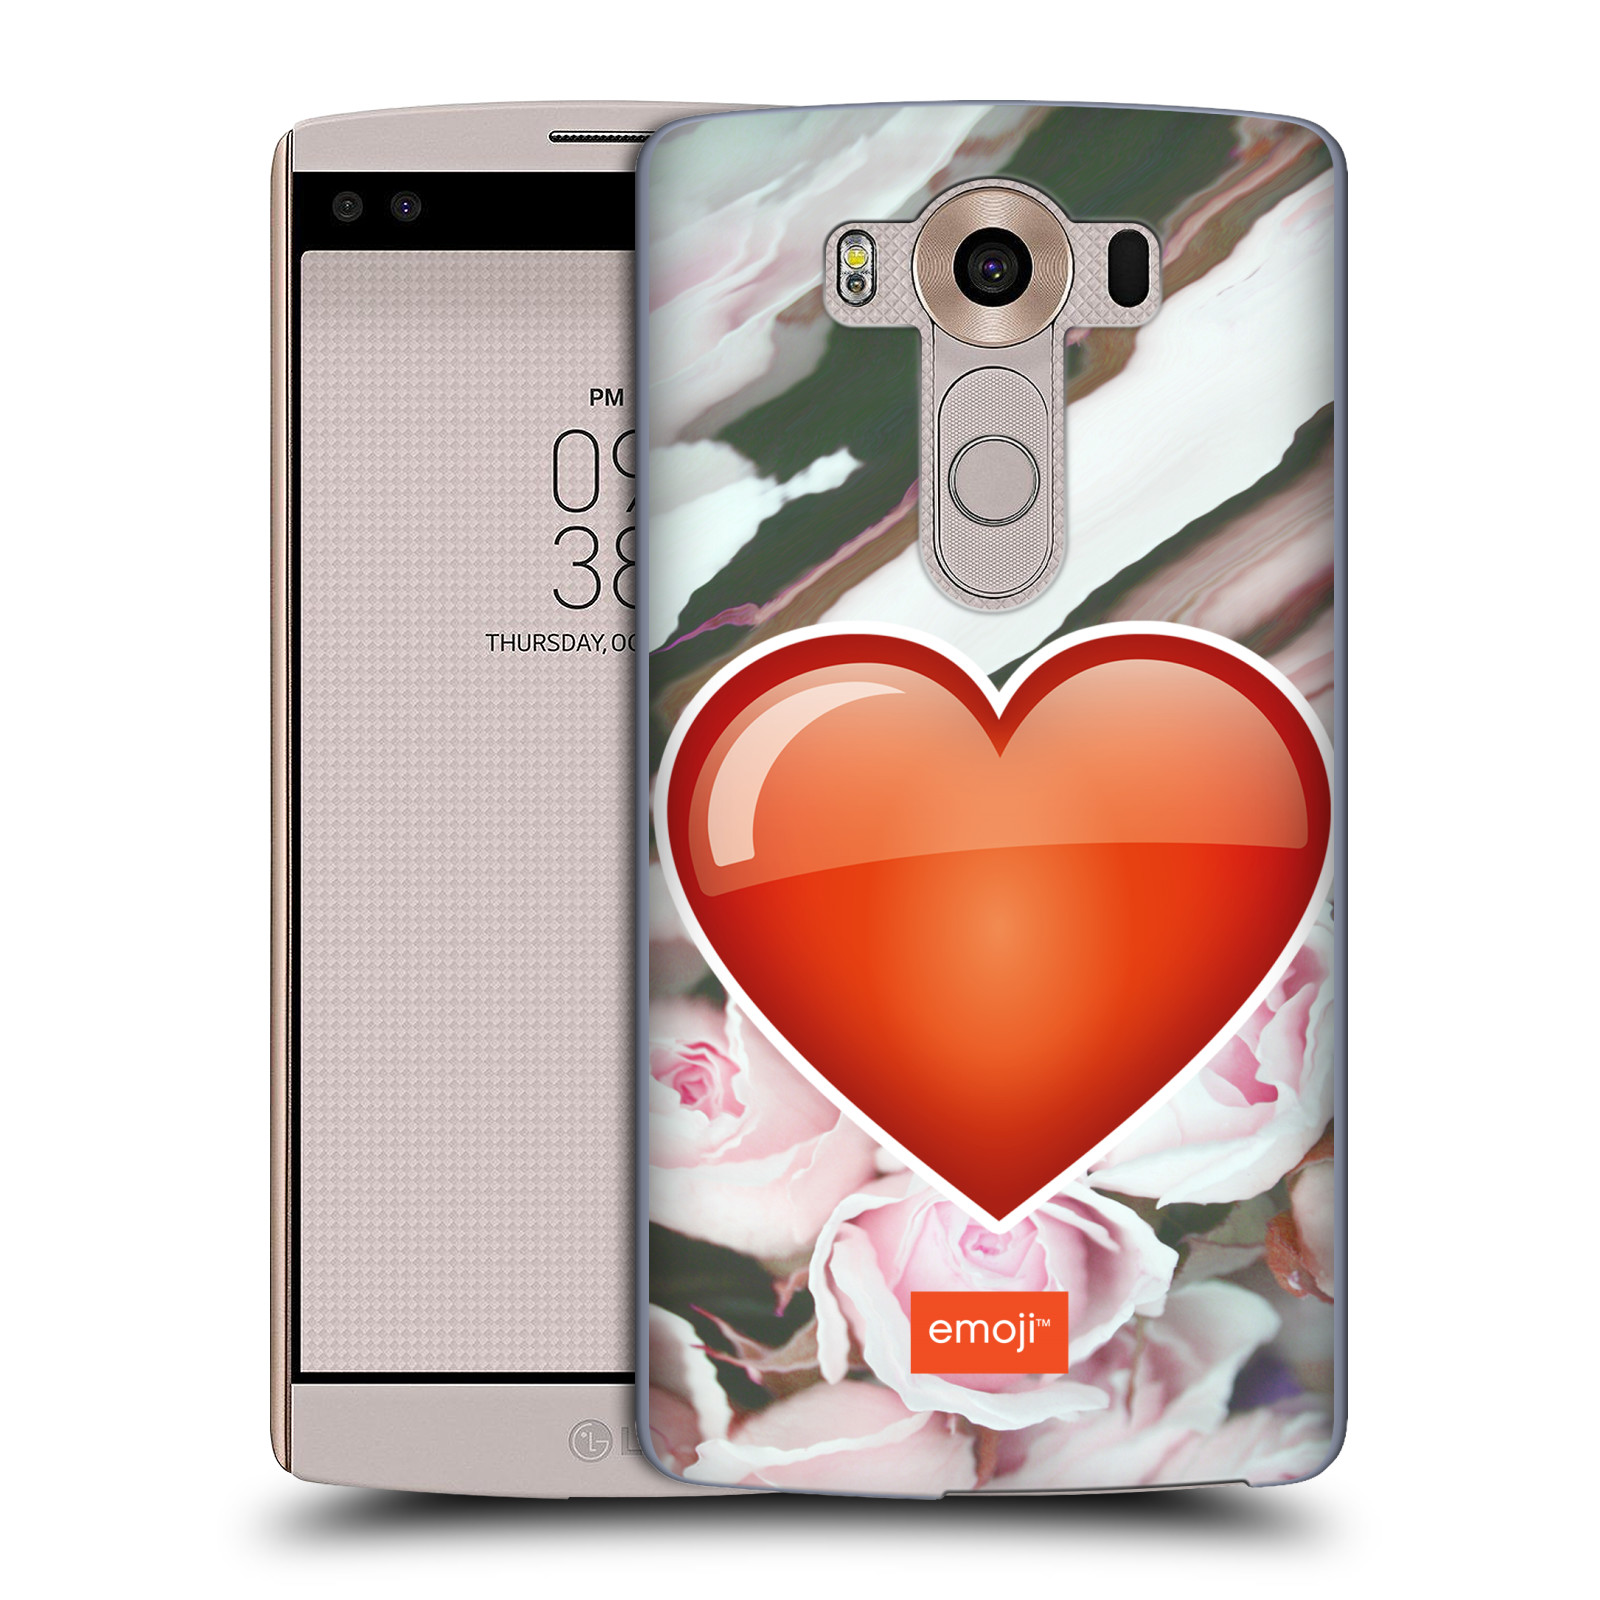 Pouzdro na mobil LG V10 - HEAD CASE - Emoji srdíčko